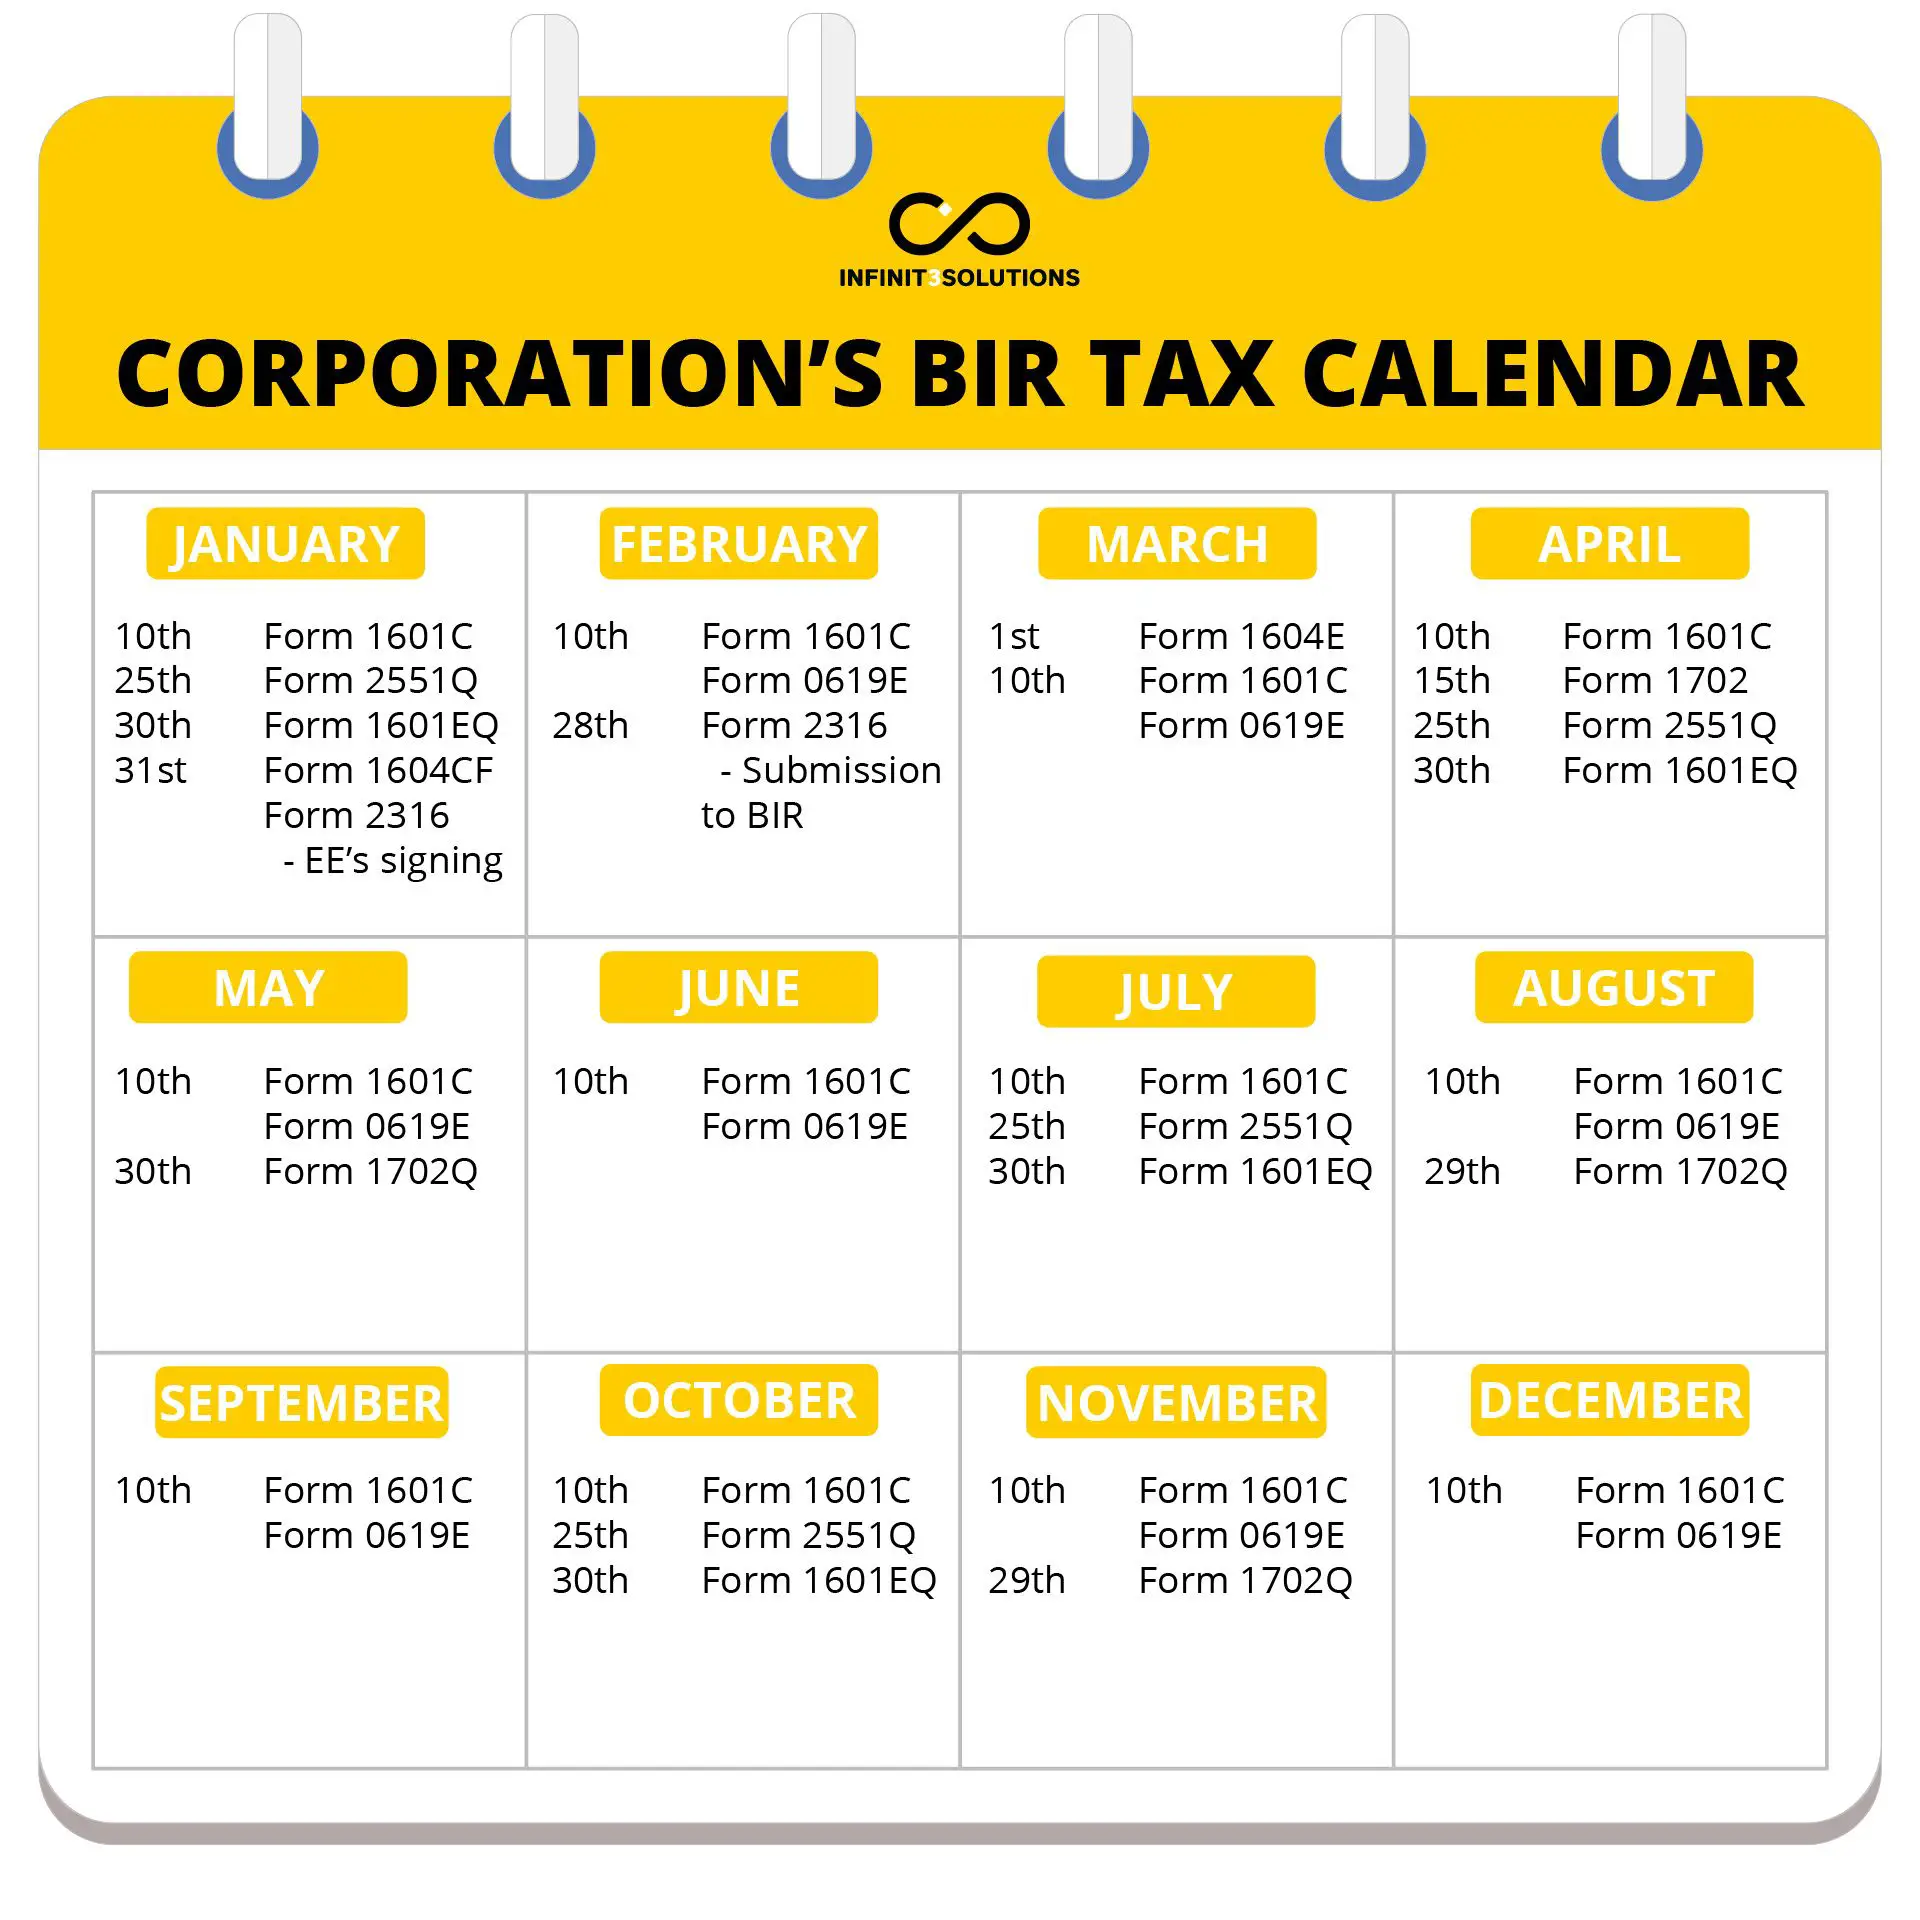 BIR Tax Deadlines